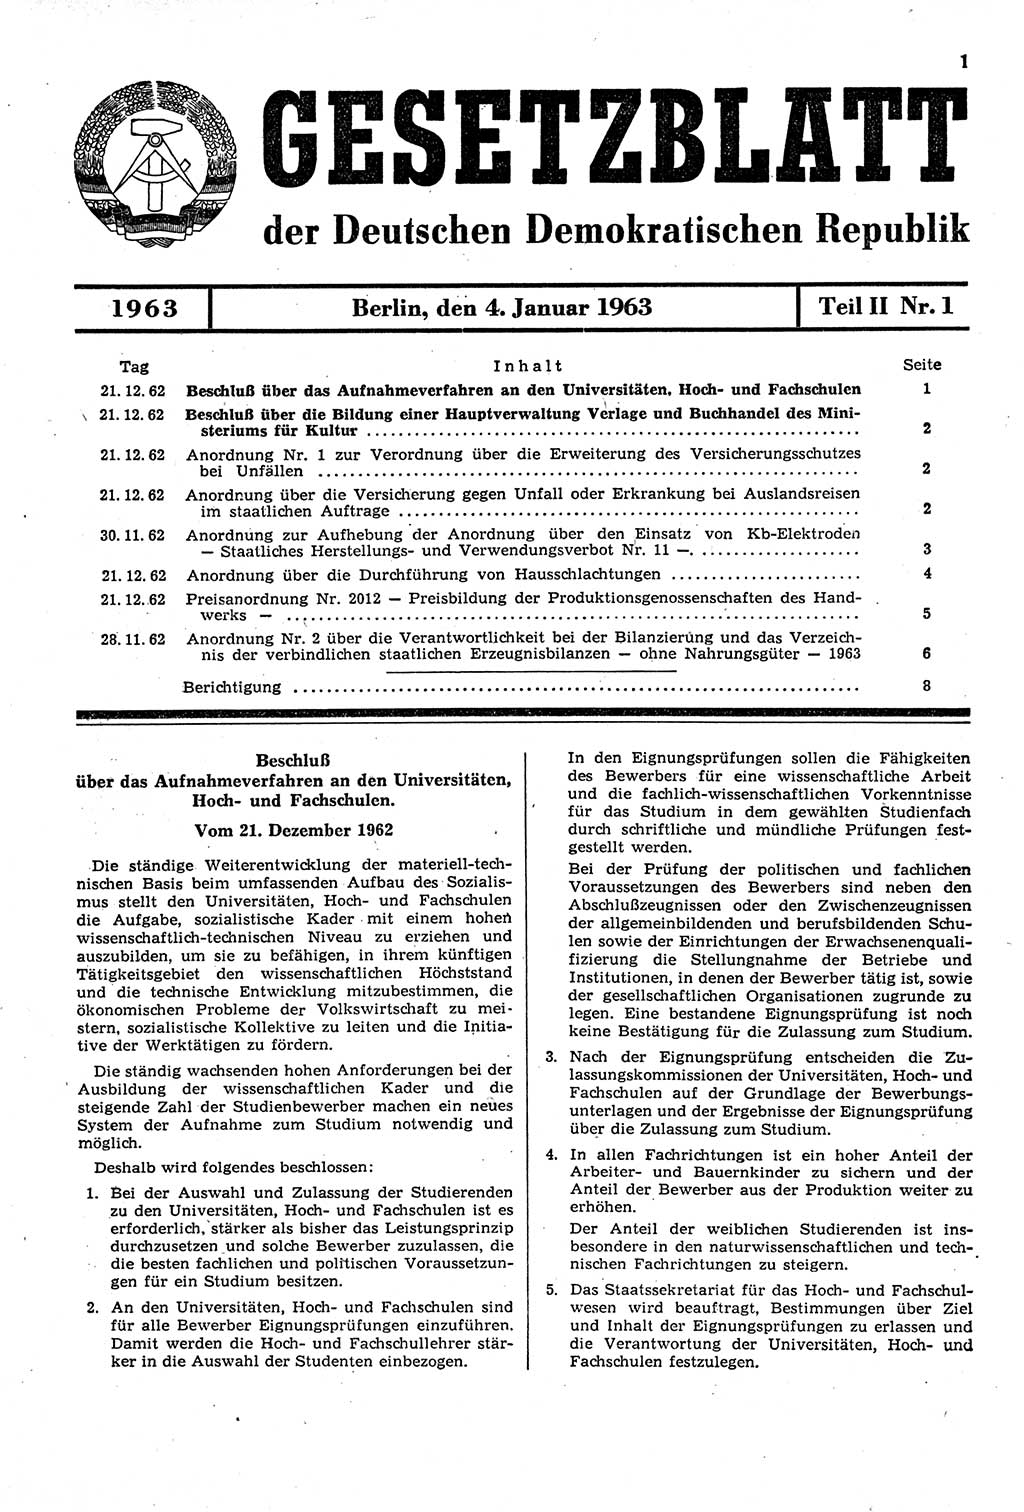 Gesetzblatt (GBl.) der Deutschen Demokratischen Republik (DDR) Teil ⅠⅠ 1963, Seite 1 (GBl. DDR ⅠⅠ 1963, S. 1)